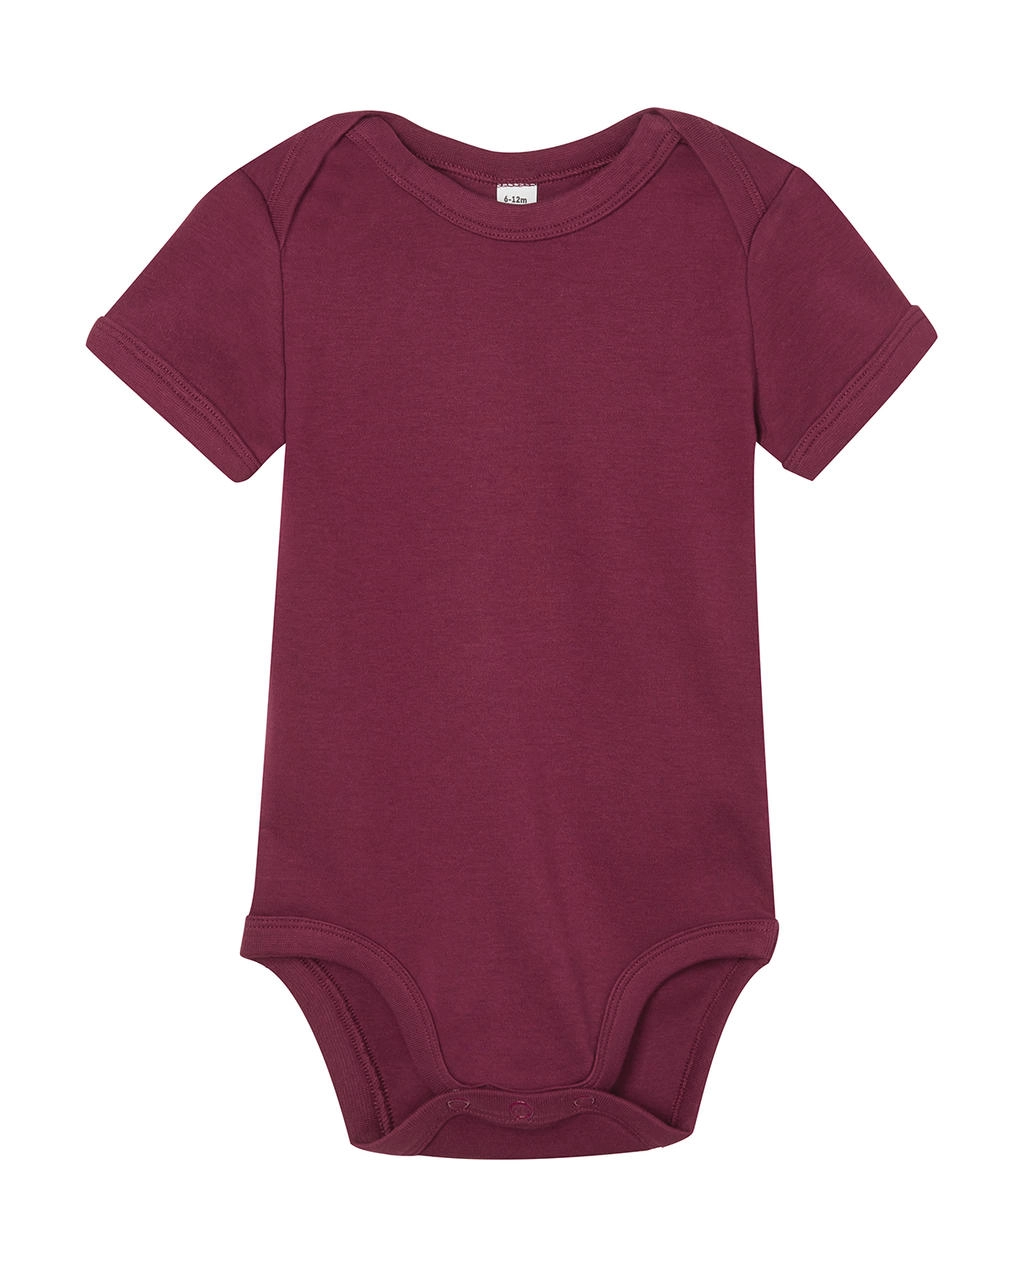 Baby Bodysuit zum Besticken und Bedrucken in der Farbe Burgundy mit Ihren Logo, Schriftzug oder Motiv.